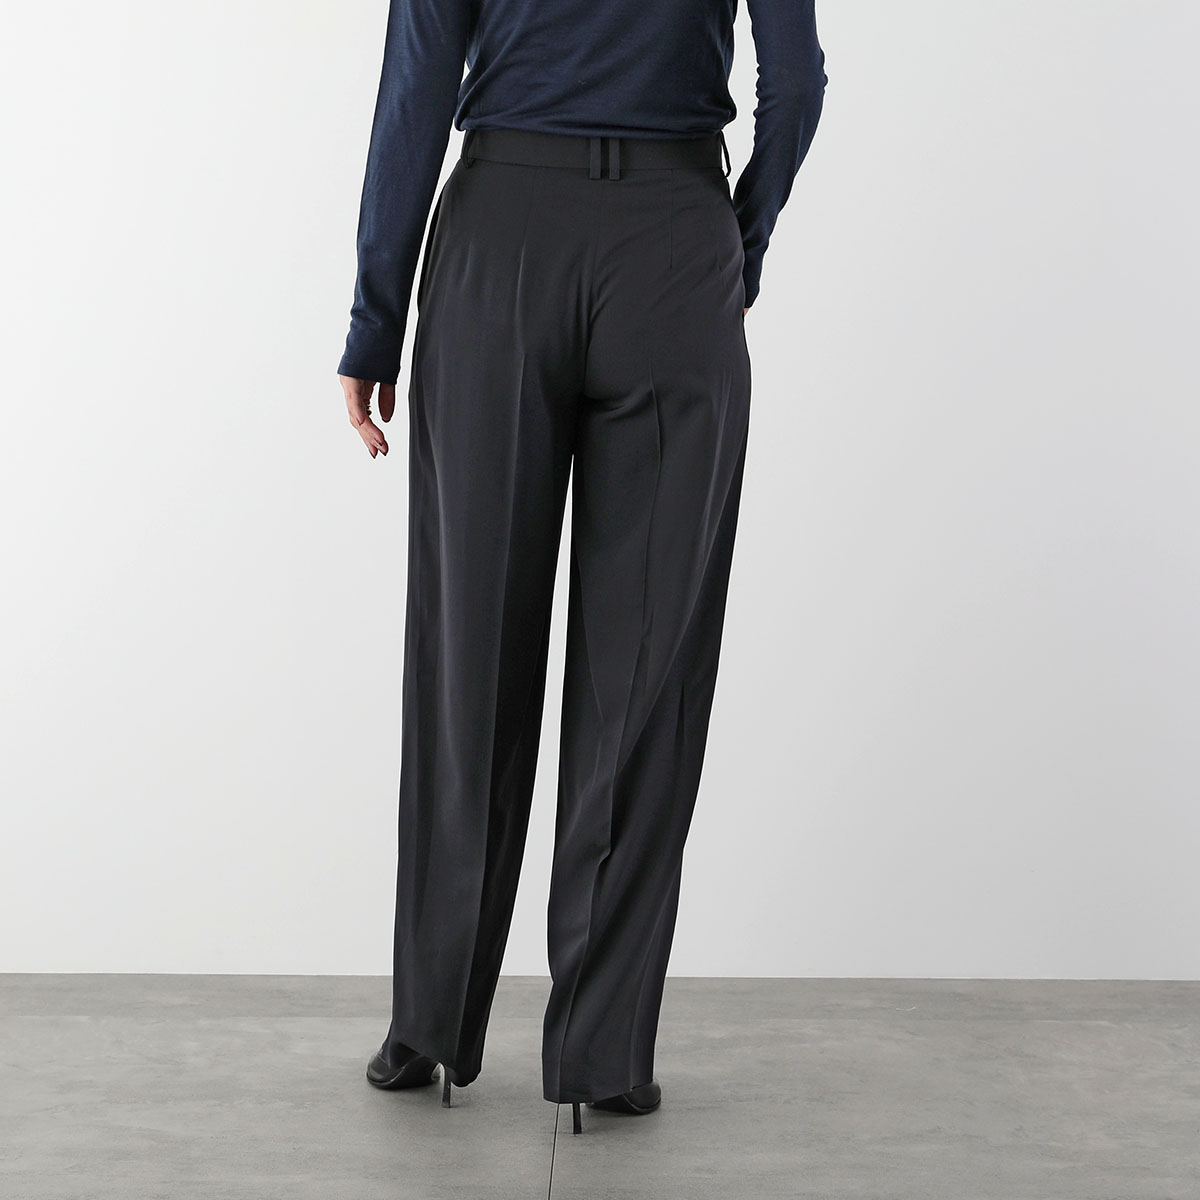 THE ROW The * low широкий брюки IGOR PANTi гол 5629 W1973 женский центральный Press ввод шерсть Blend BLK